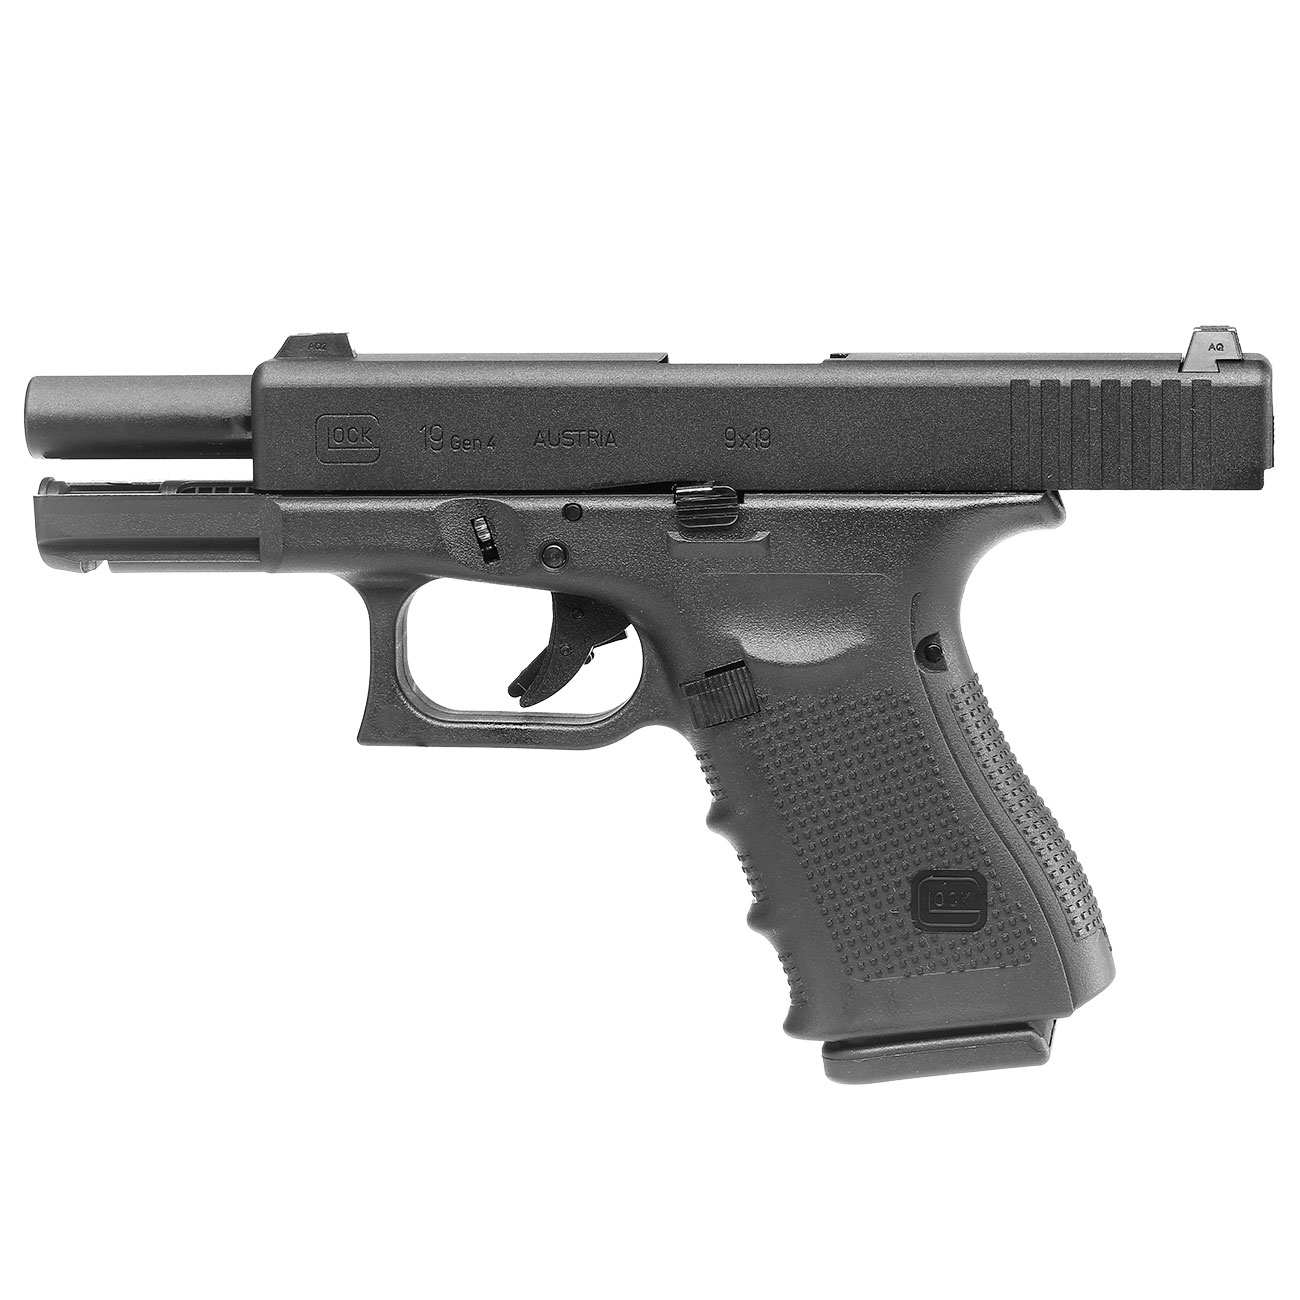 VFC Glock 19 Gen. 4 mit Metallschlitten GBB 6mm BB schwarz Bild 1